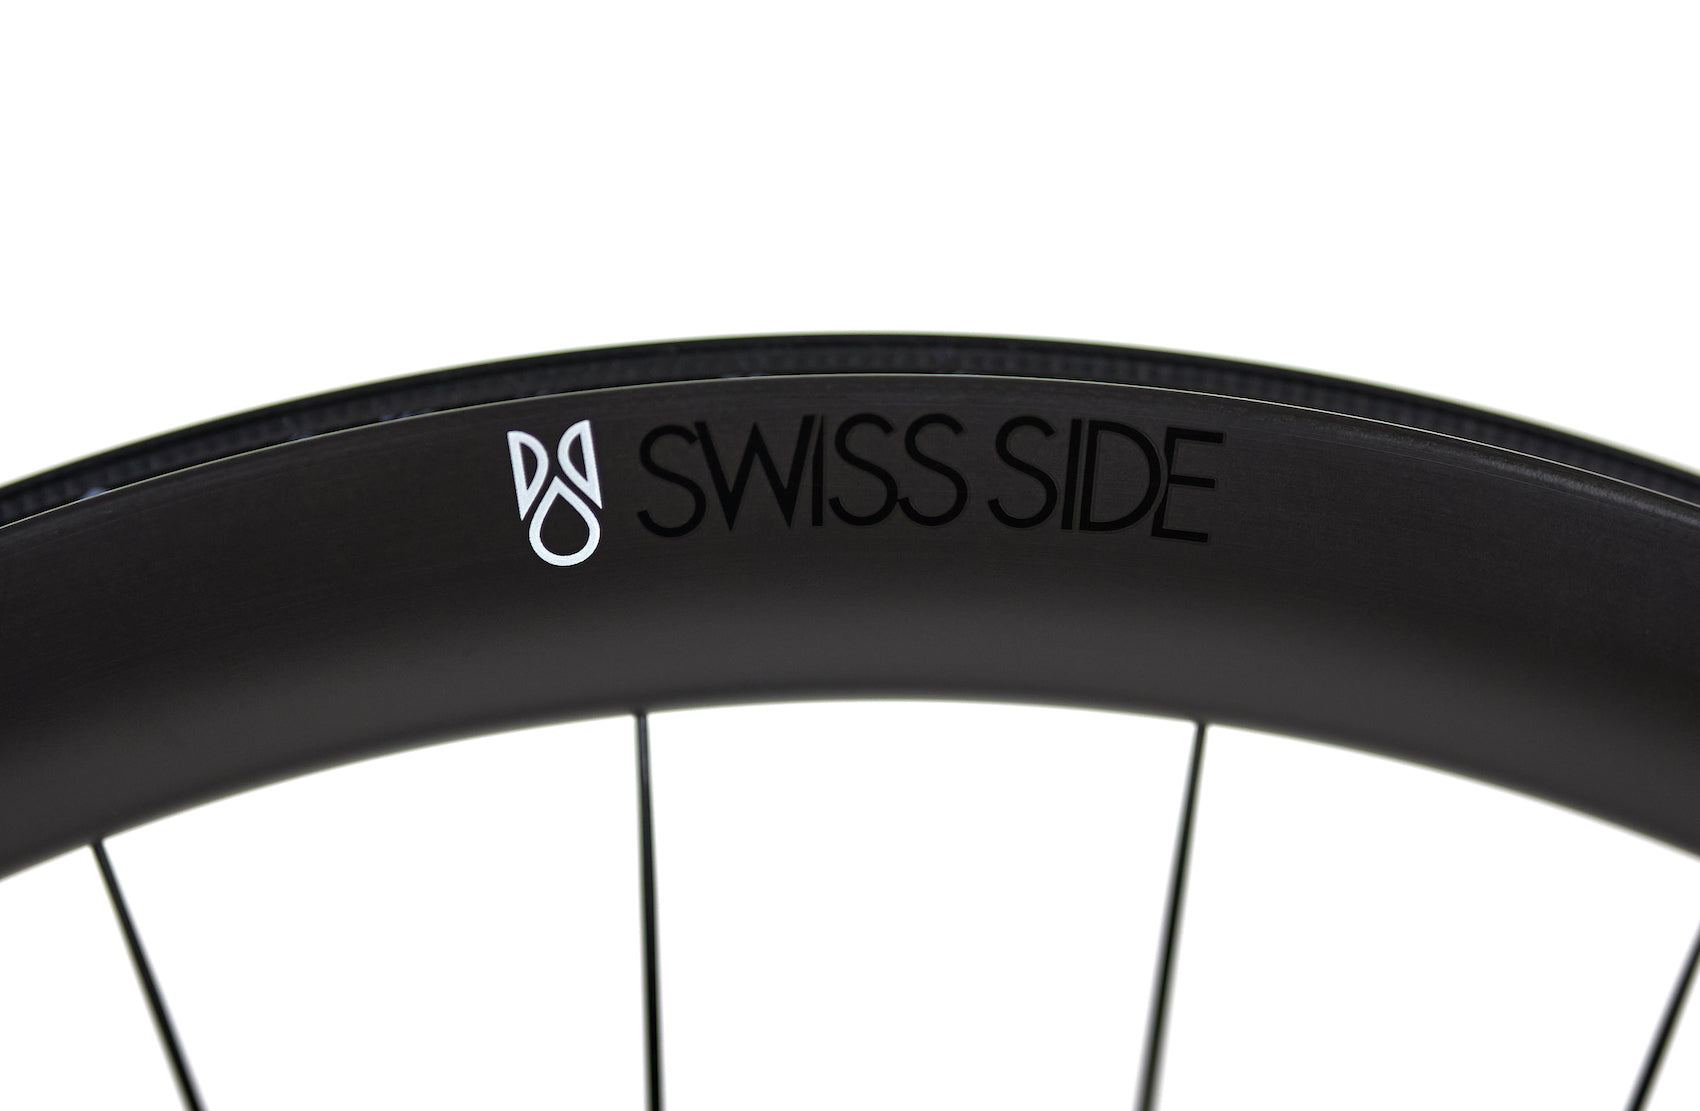 HADRON² All-Road Ultimate Rear Wheel – Swiss Side